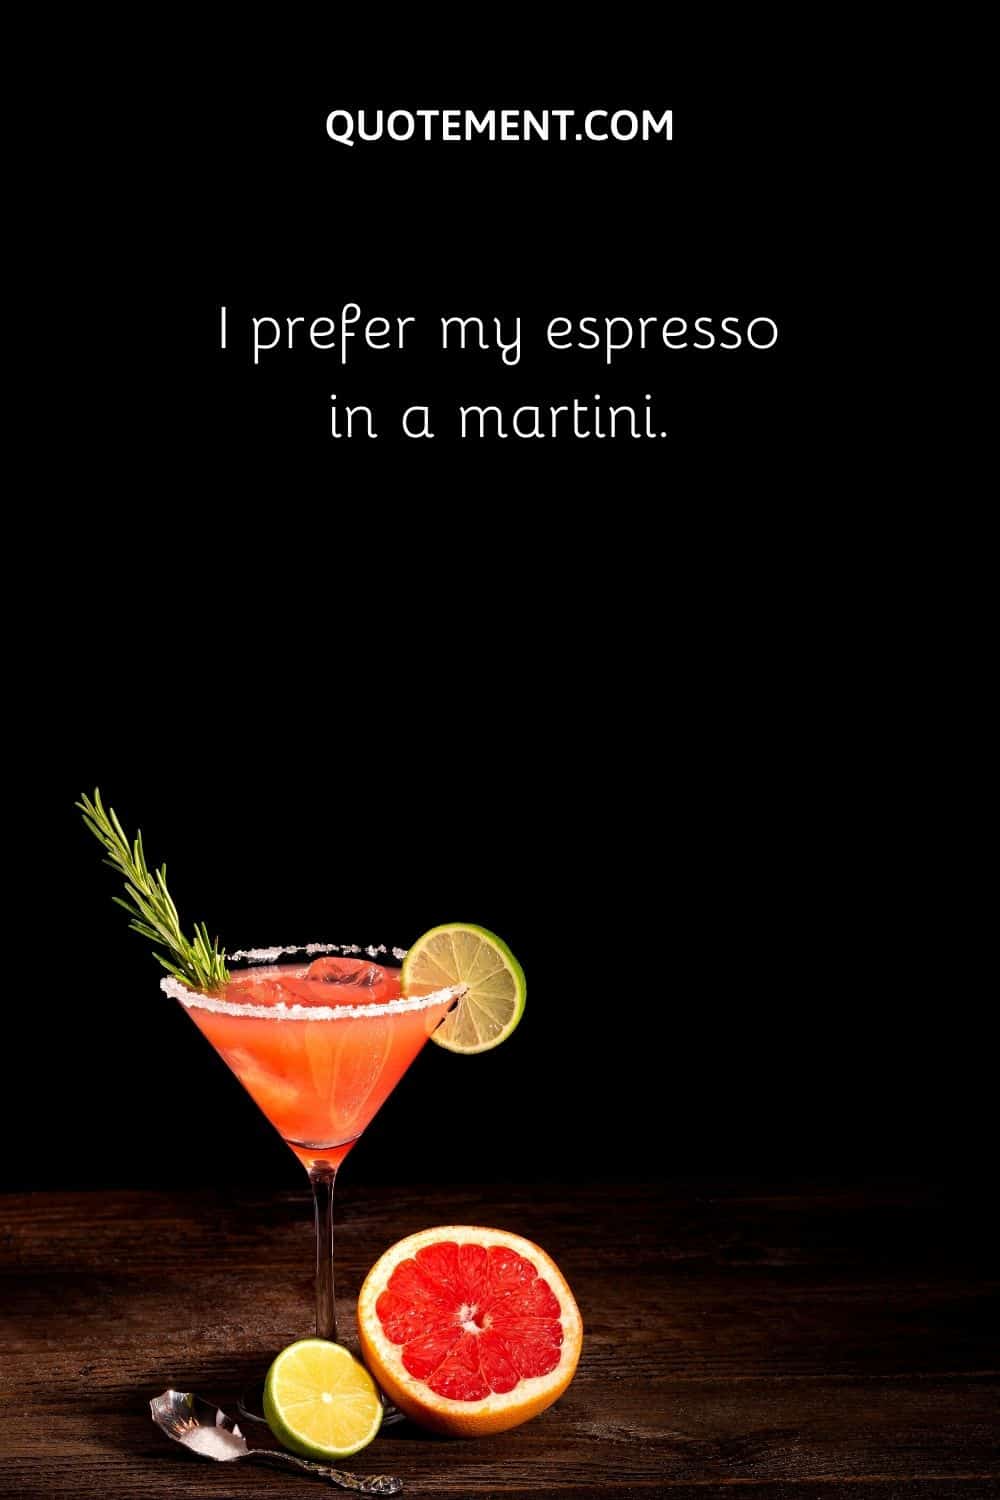 I prefer my espresso in a martini.